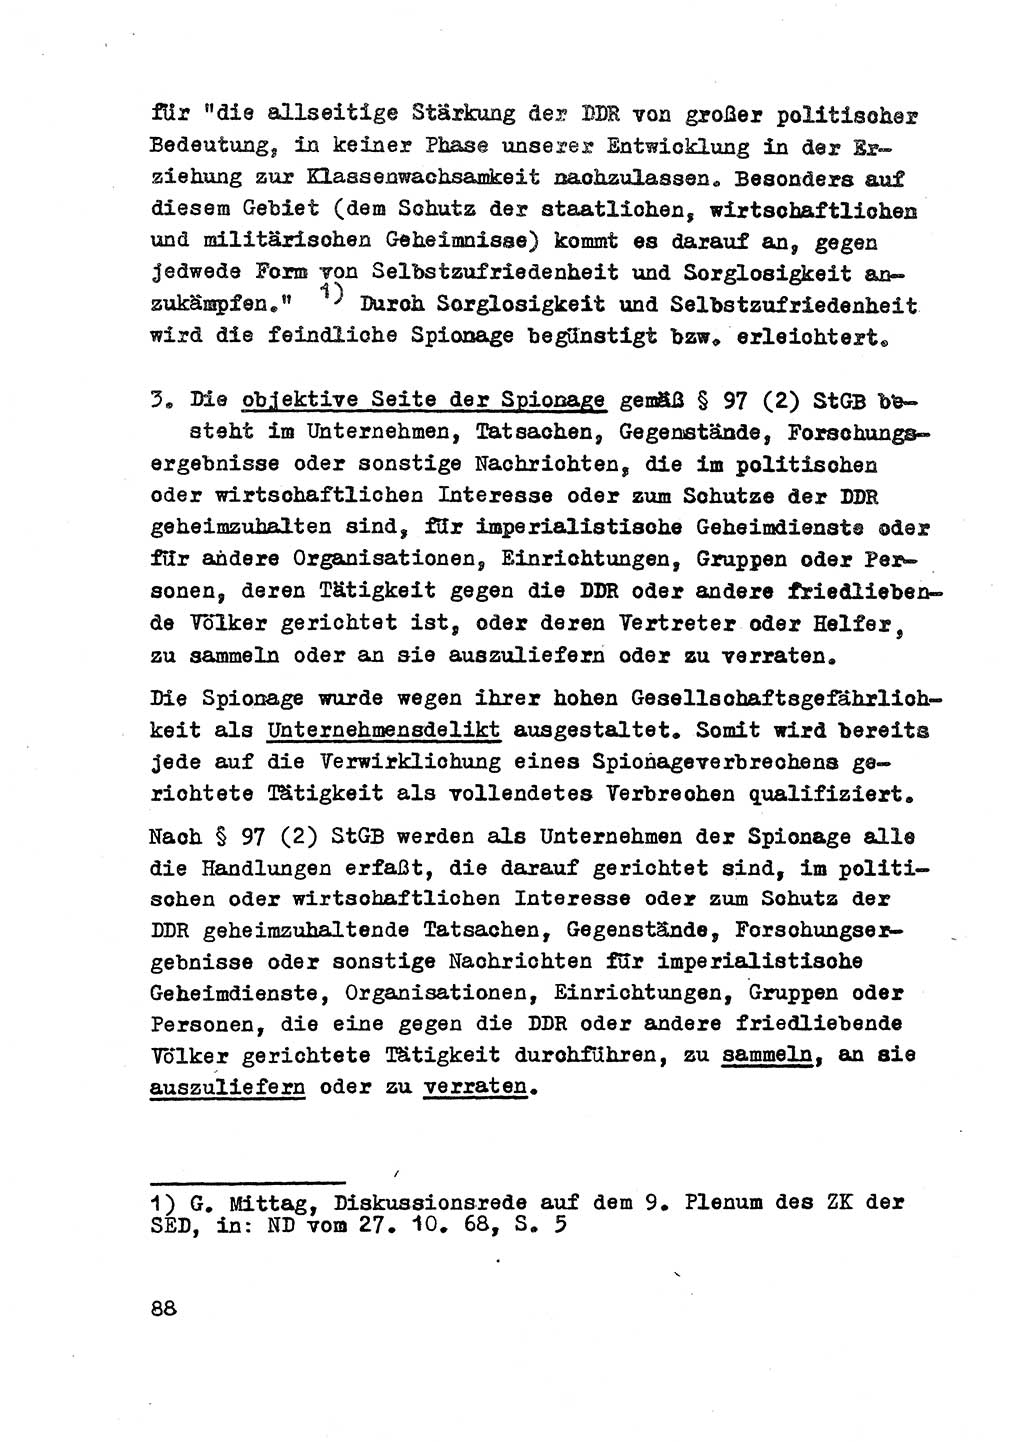 Strafrecht der DDR (Deutsche Demokratische Republik), Besonderer Teil, Lehrmaterial, Heft 2 1969, Seite 88 (Strafr. DDR BT Lehrmat. H. 2 1969, S. 88)